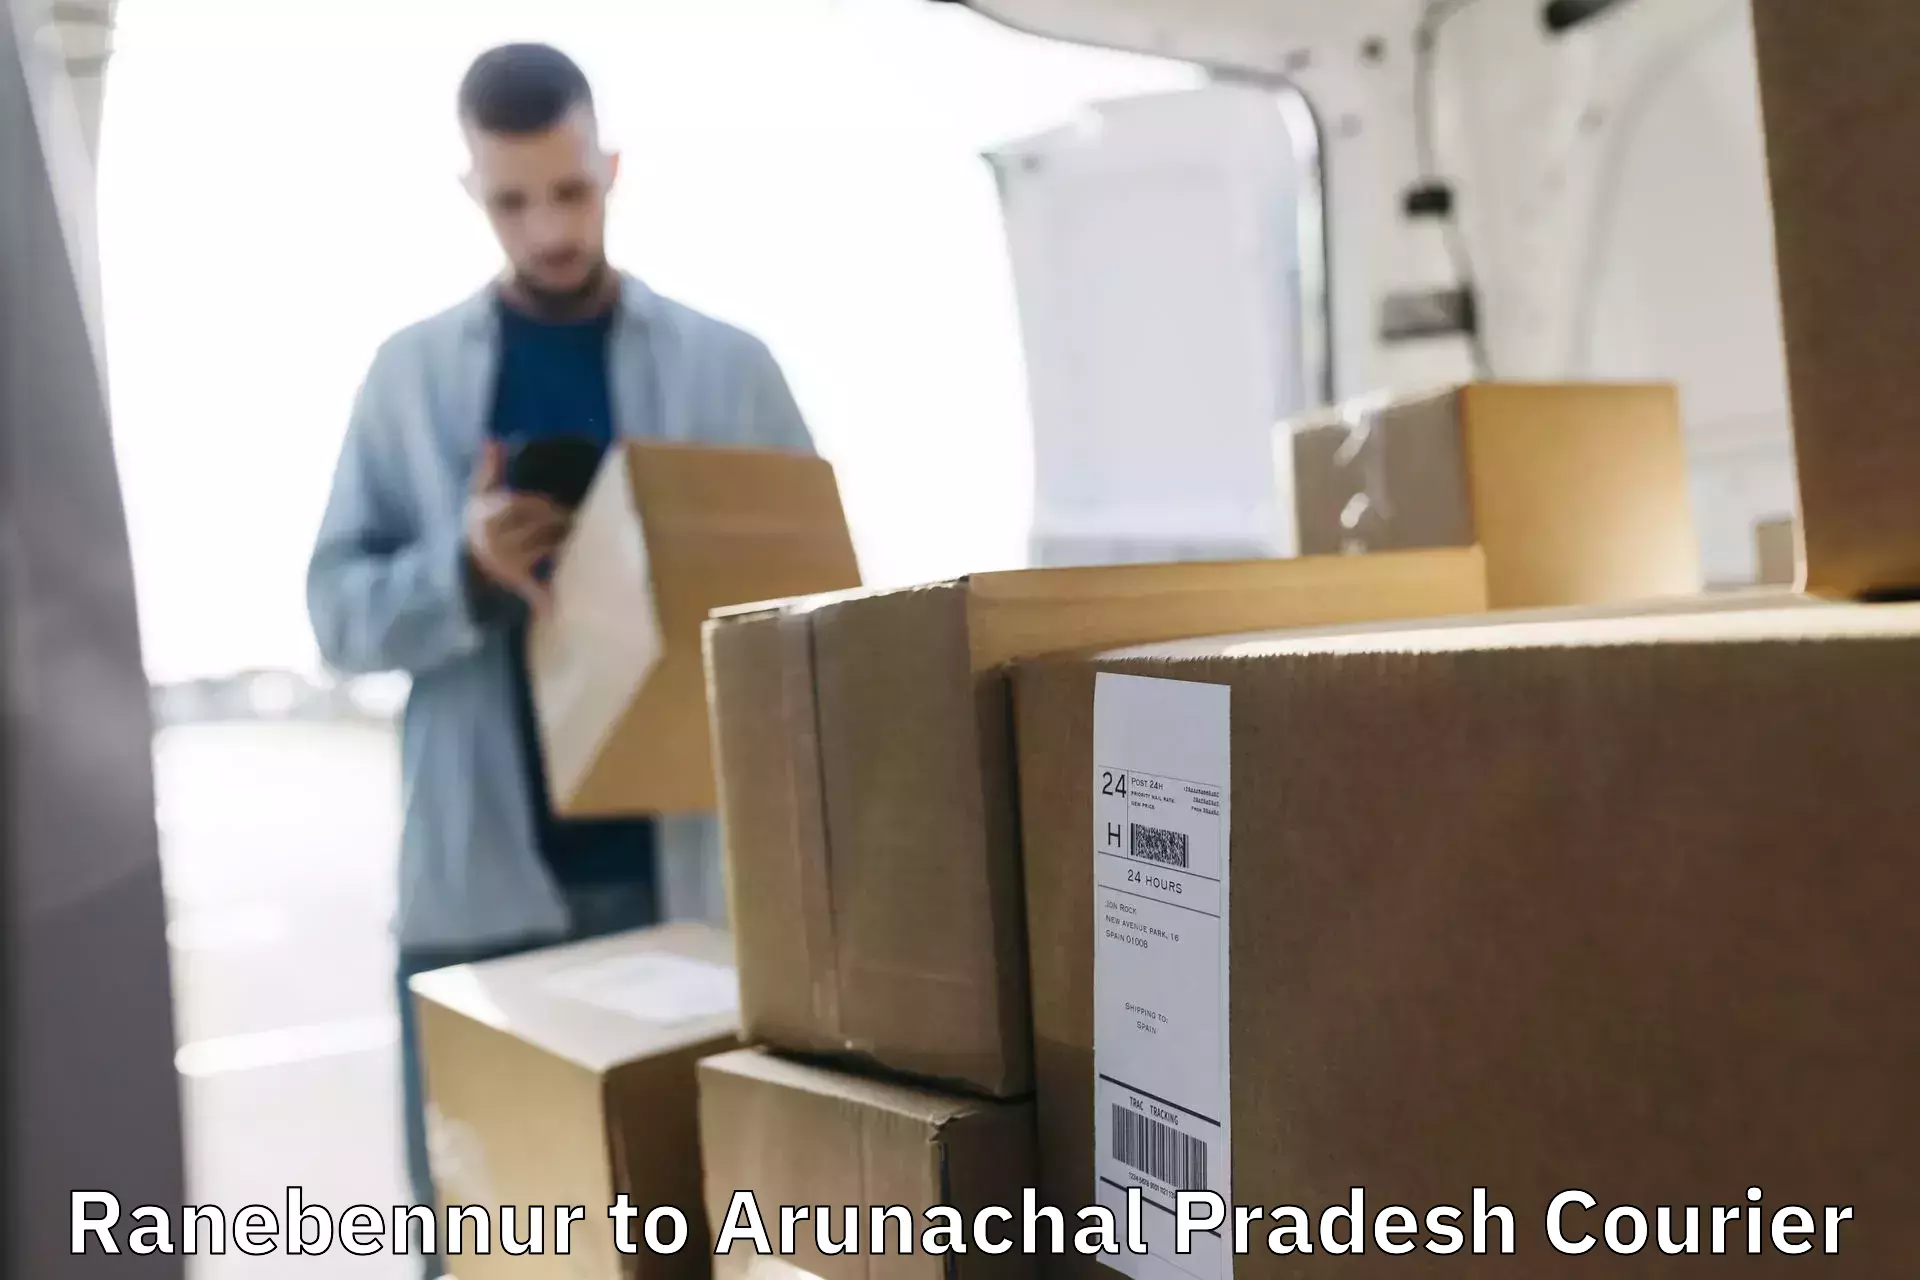 Overnight delivery services Ranebennur to Arunachal Pradesh